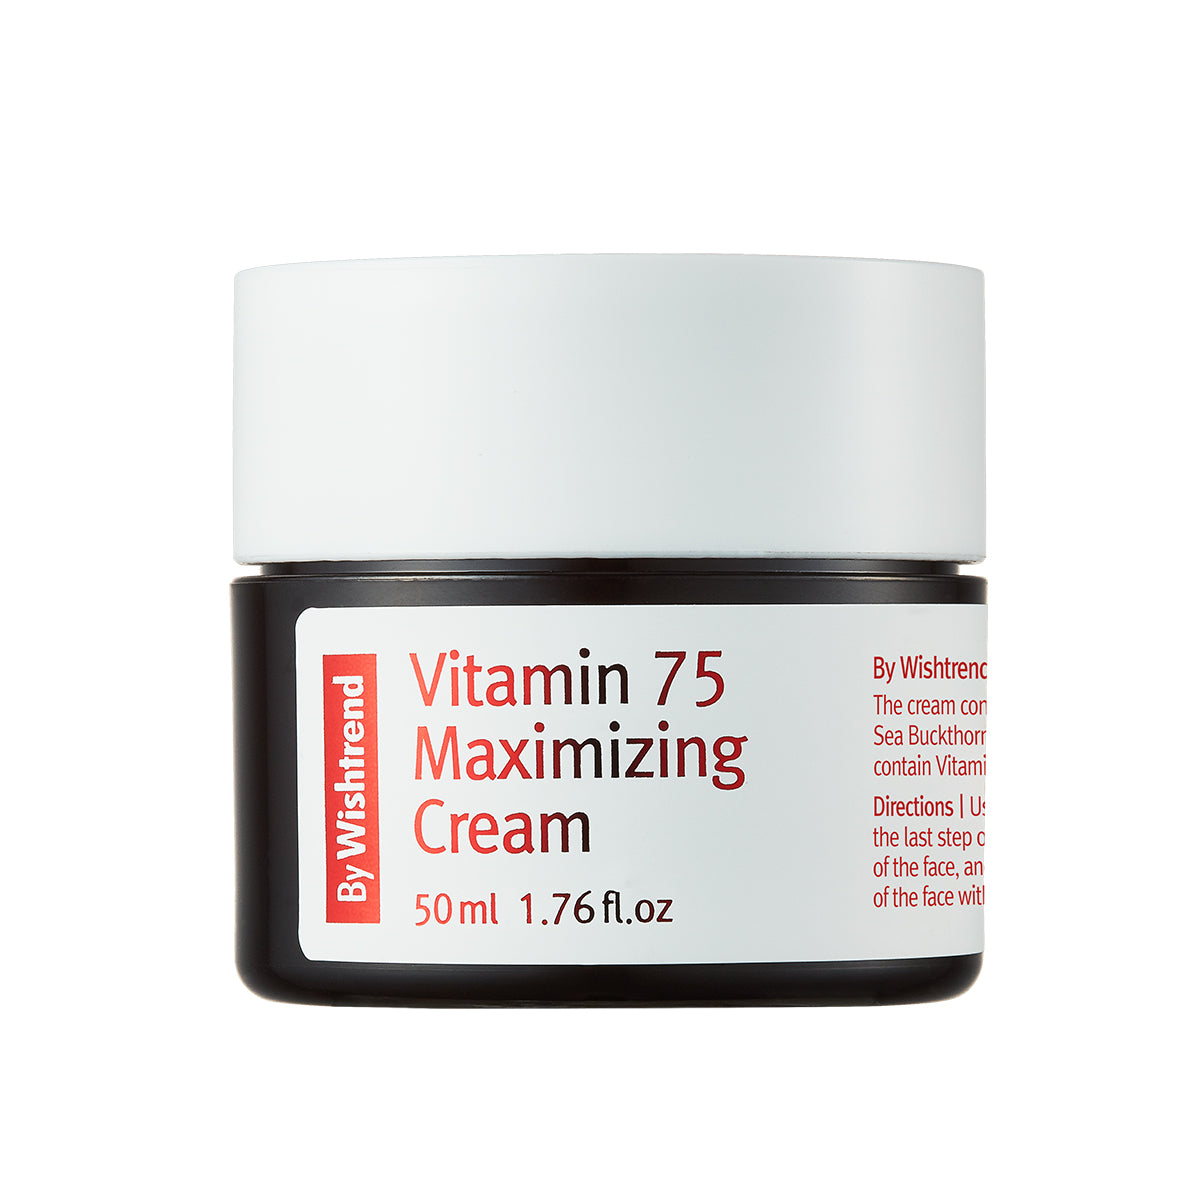 Vitamin 75 Maximising Cream